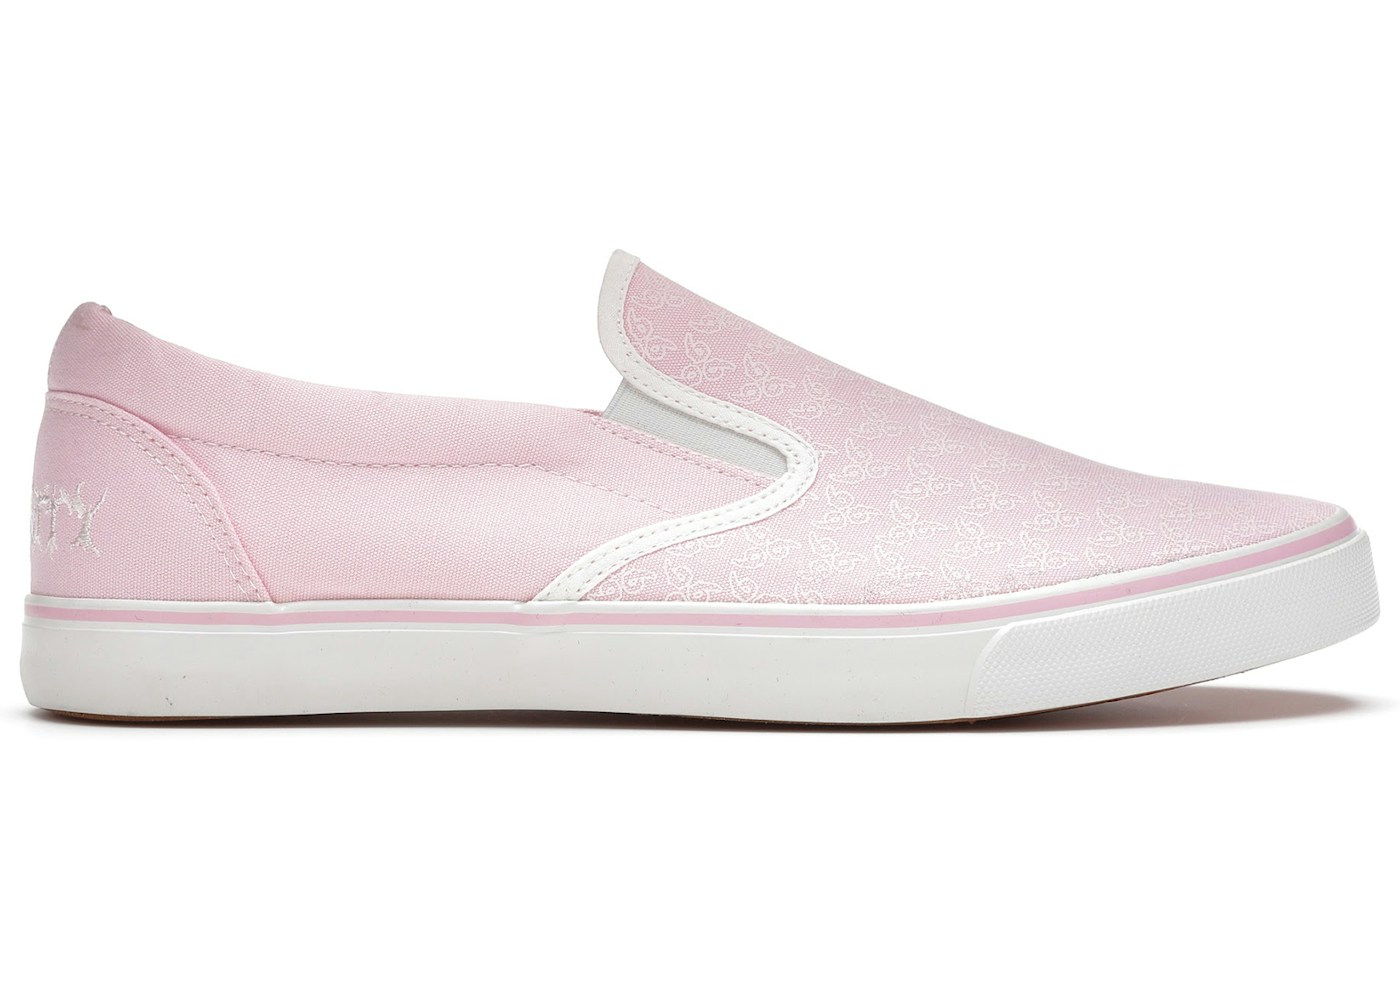 Juice WRLD 999 No Vanity Shoe Pink - Sneakers